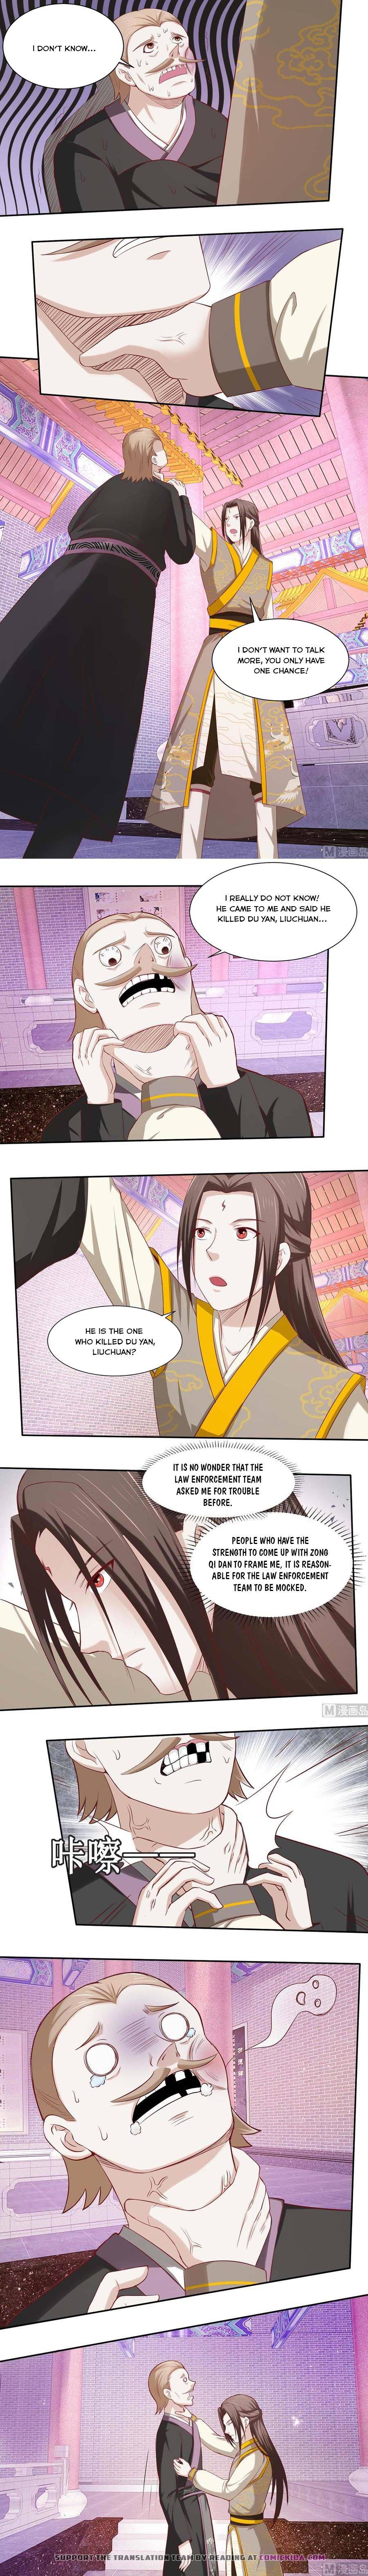 Nine-Yang Emperor - Page 2